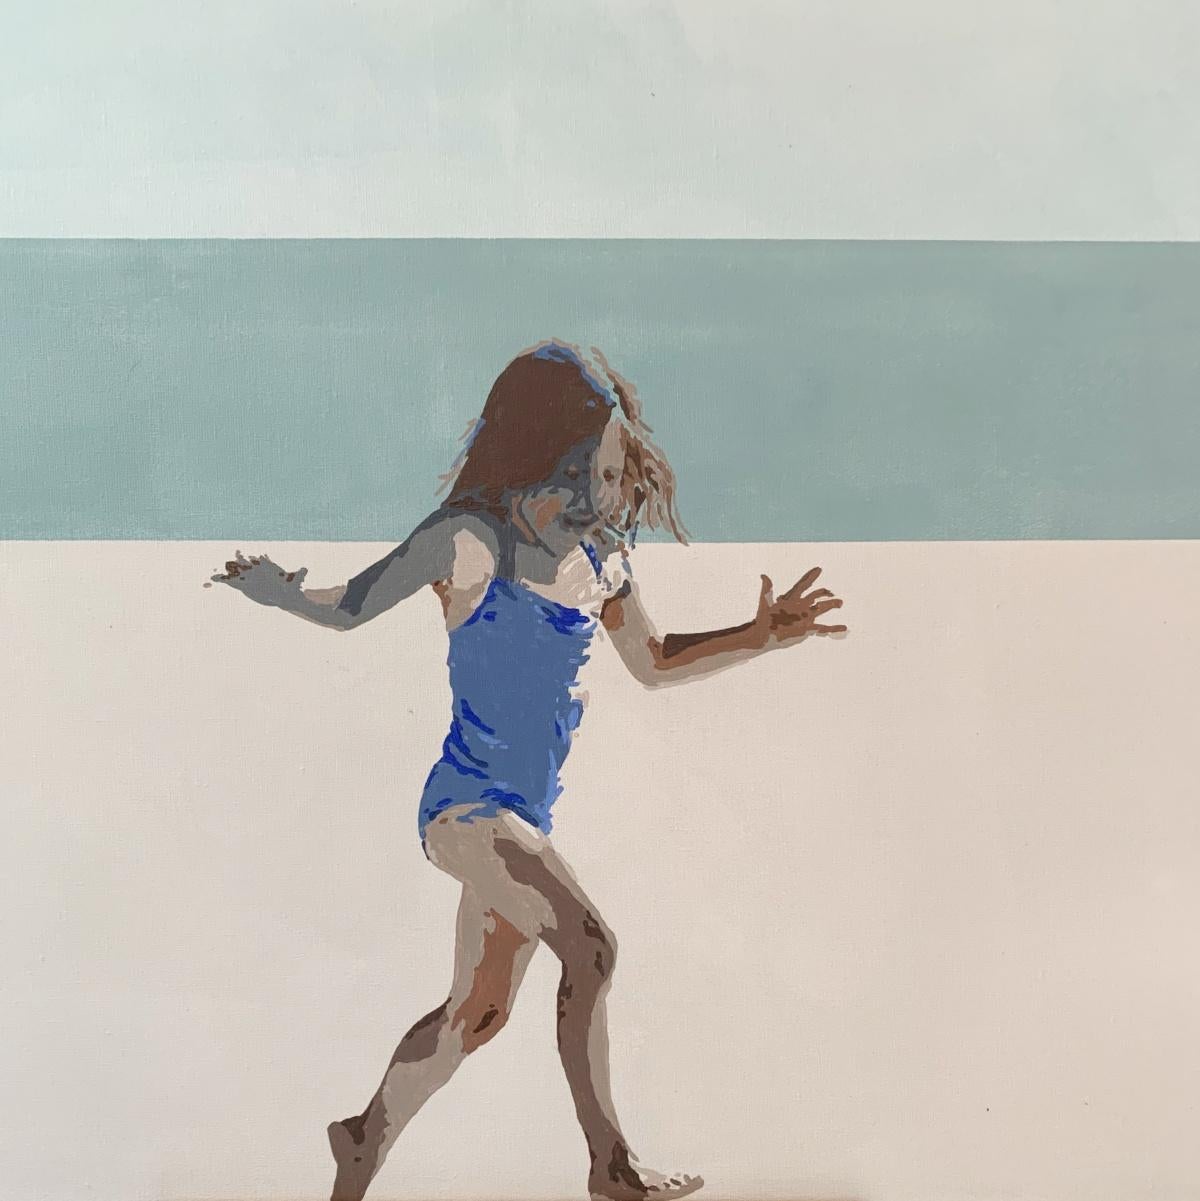 Zeitgenössisches figuratives Gemälde in Acryl auf Leinwand der polnischen Künstlerin Joanna Woyda. Die Malerei ist im minimalistischen Pop-Art-Stil gehalten. Das Kunstwerk zeigt ein Mädchen, das spielerisch an einem Strand läuft. Die Farben sind